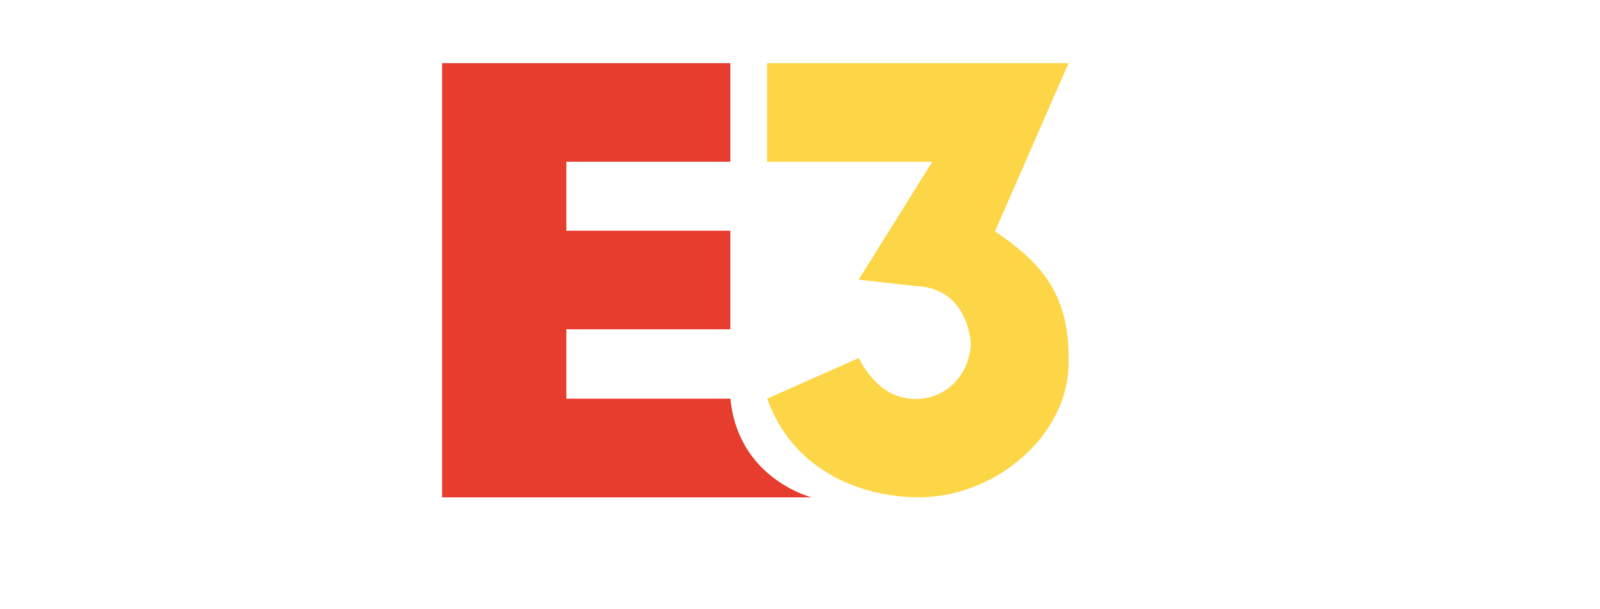 E3 2020 Tetap Berjalan Sesuai Jadwal